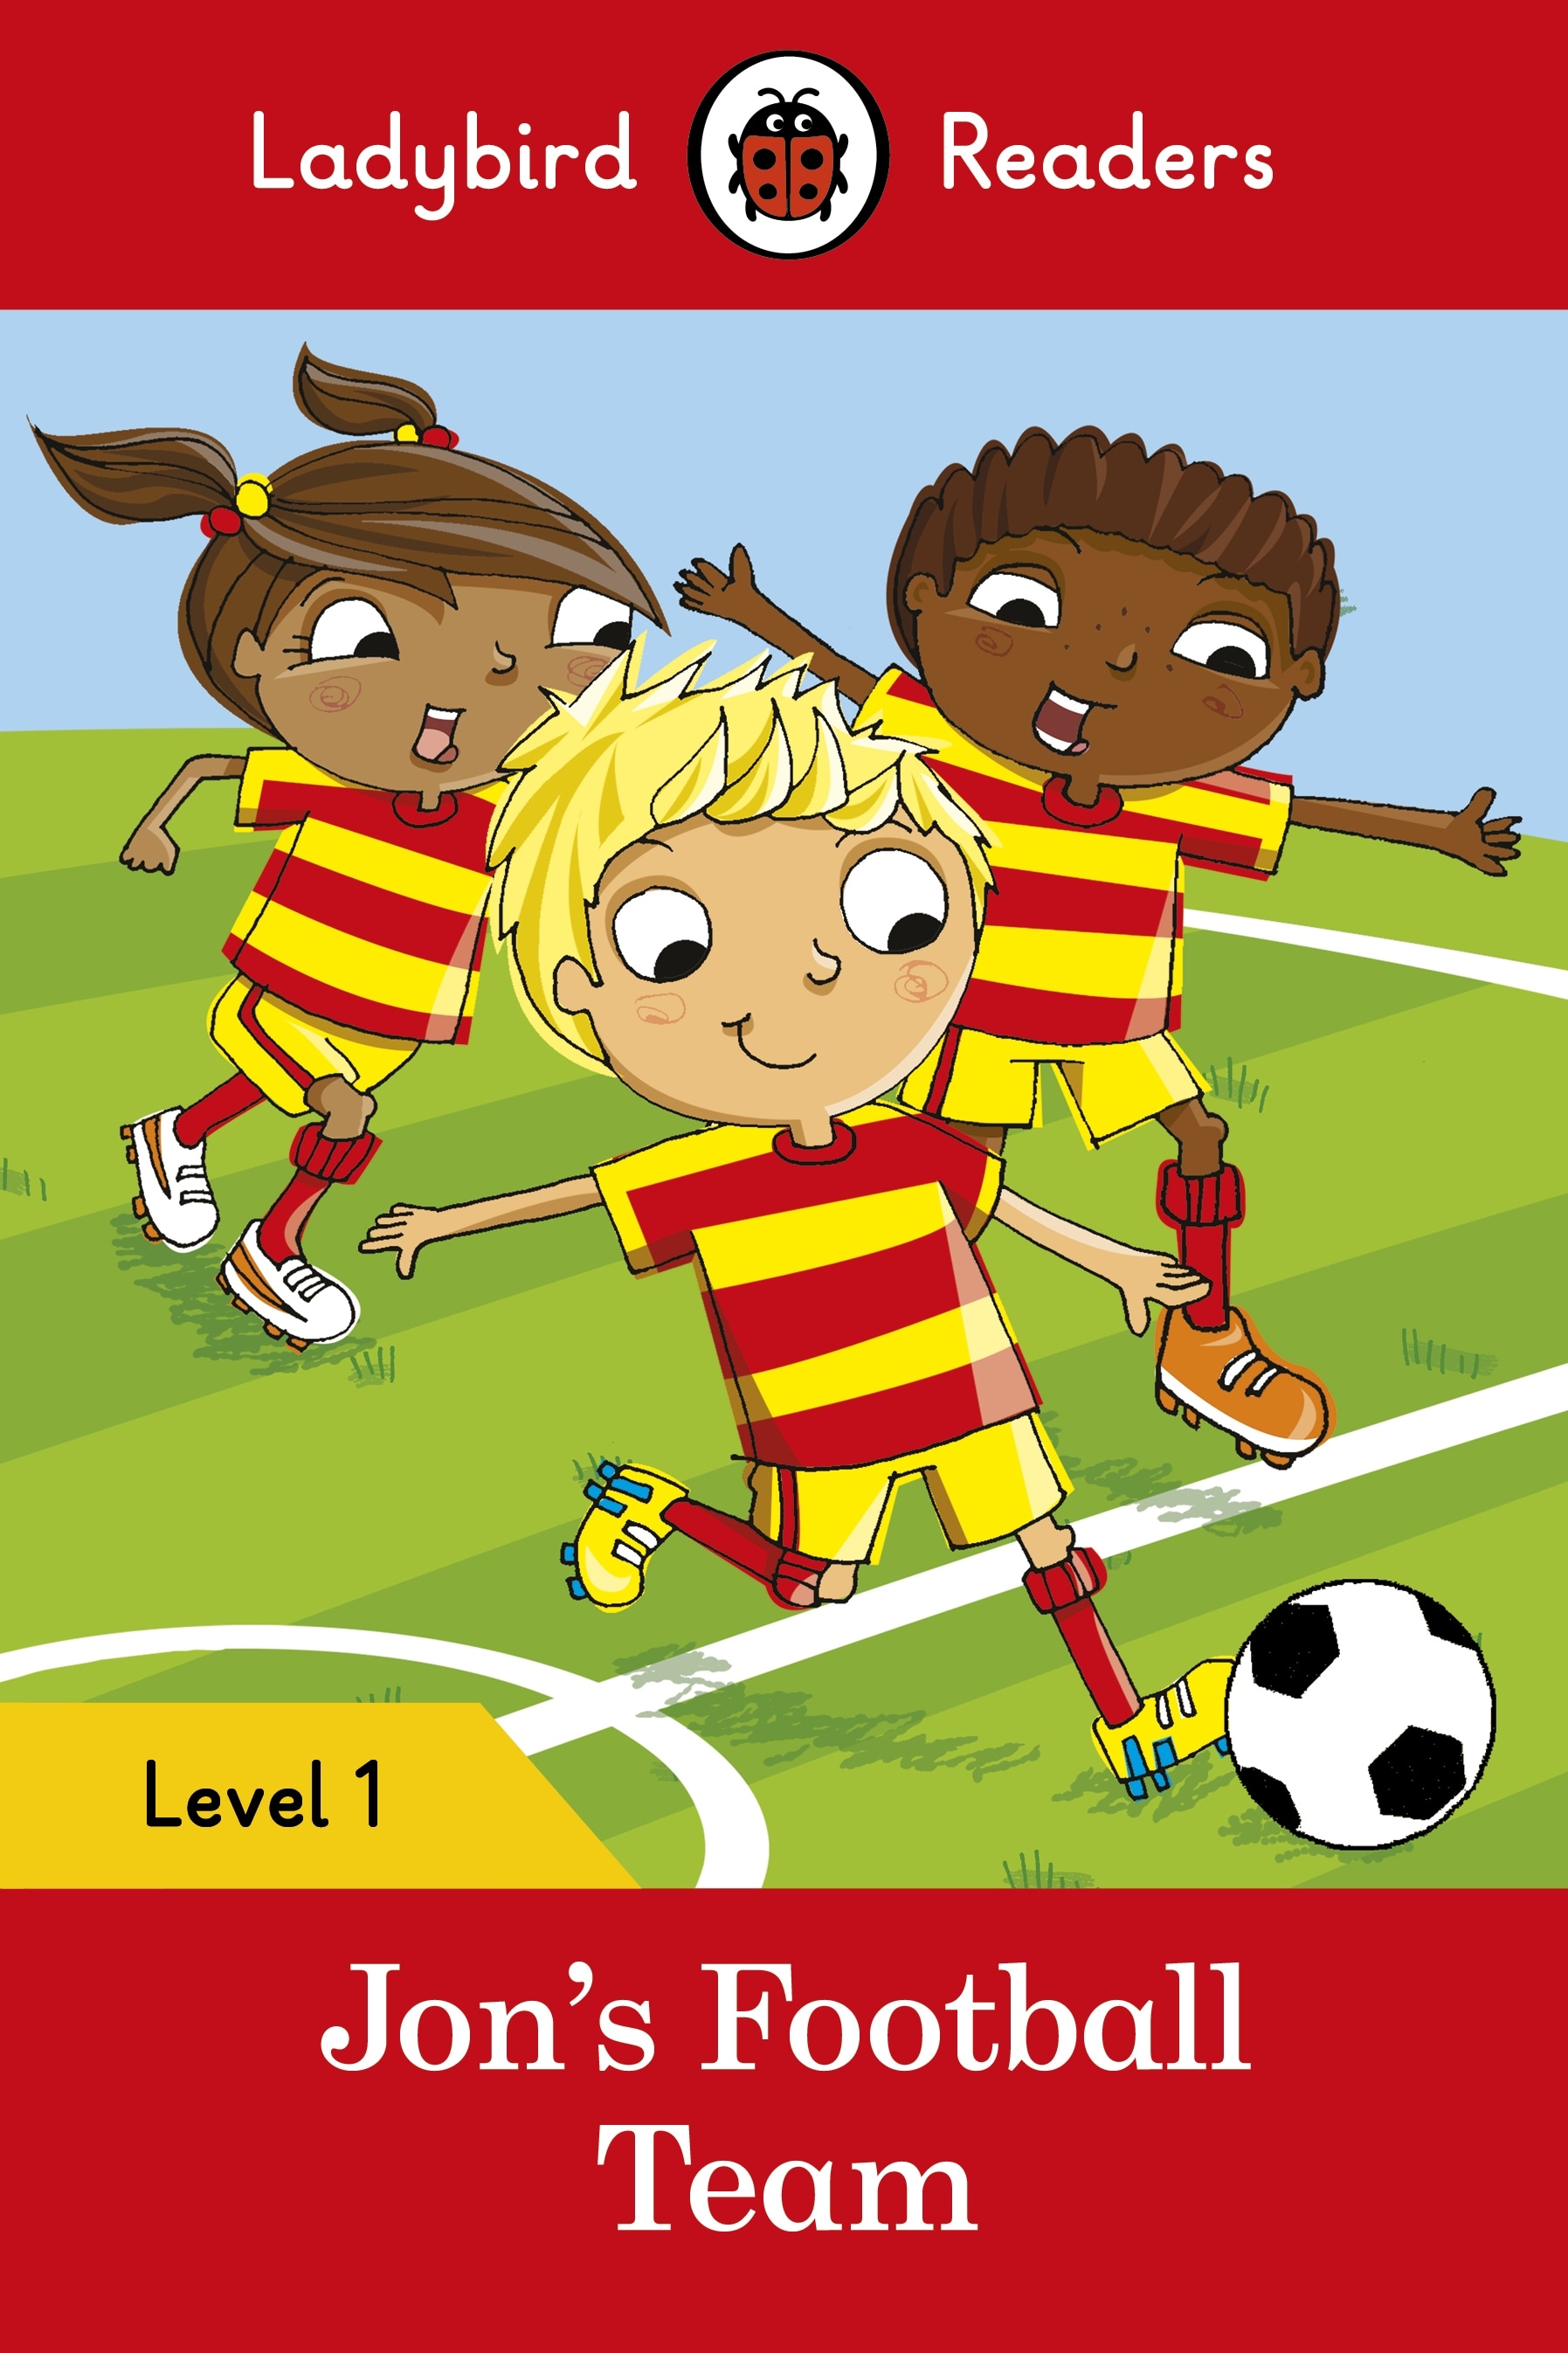 Jon's Football Team – Ladybird Readers Level 1